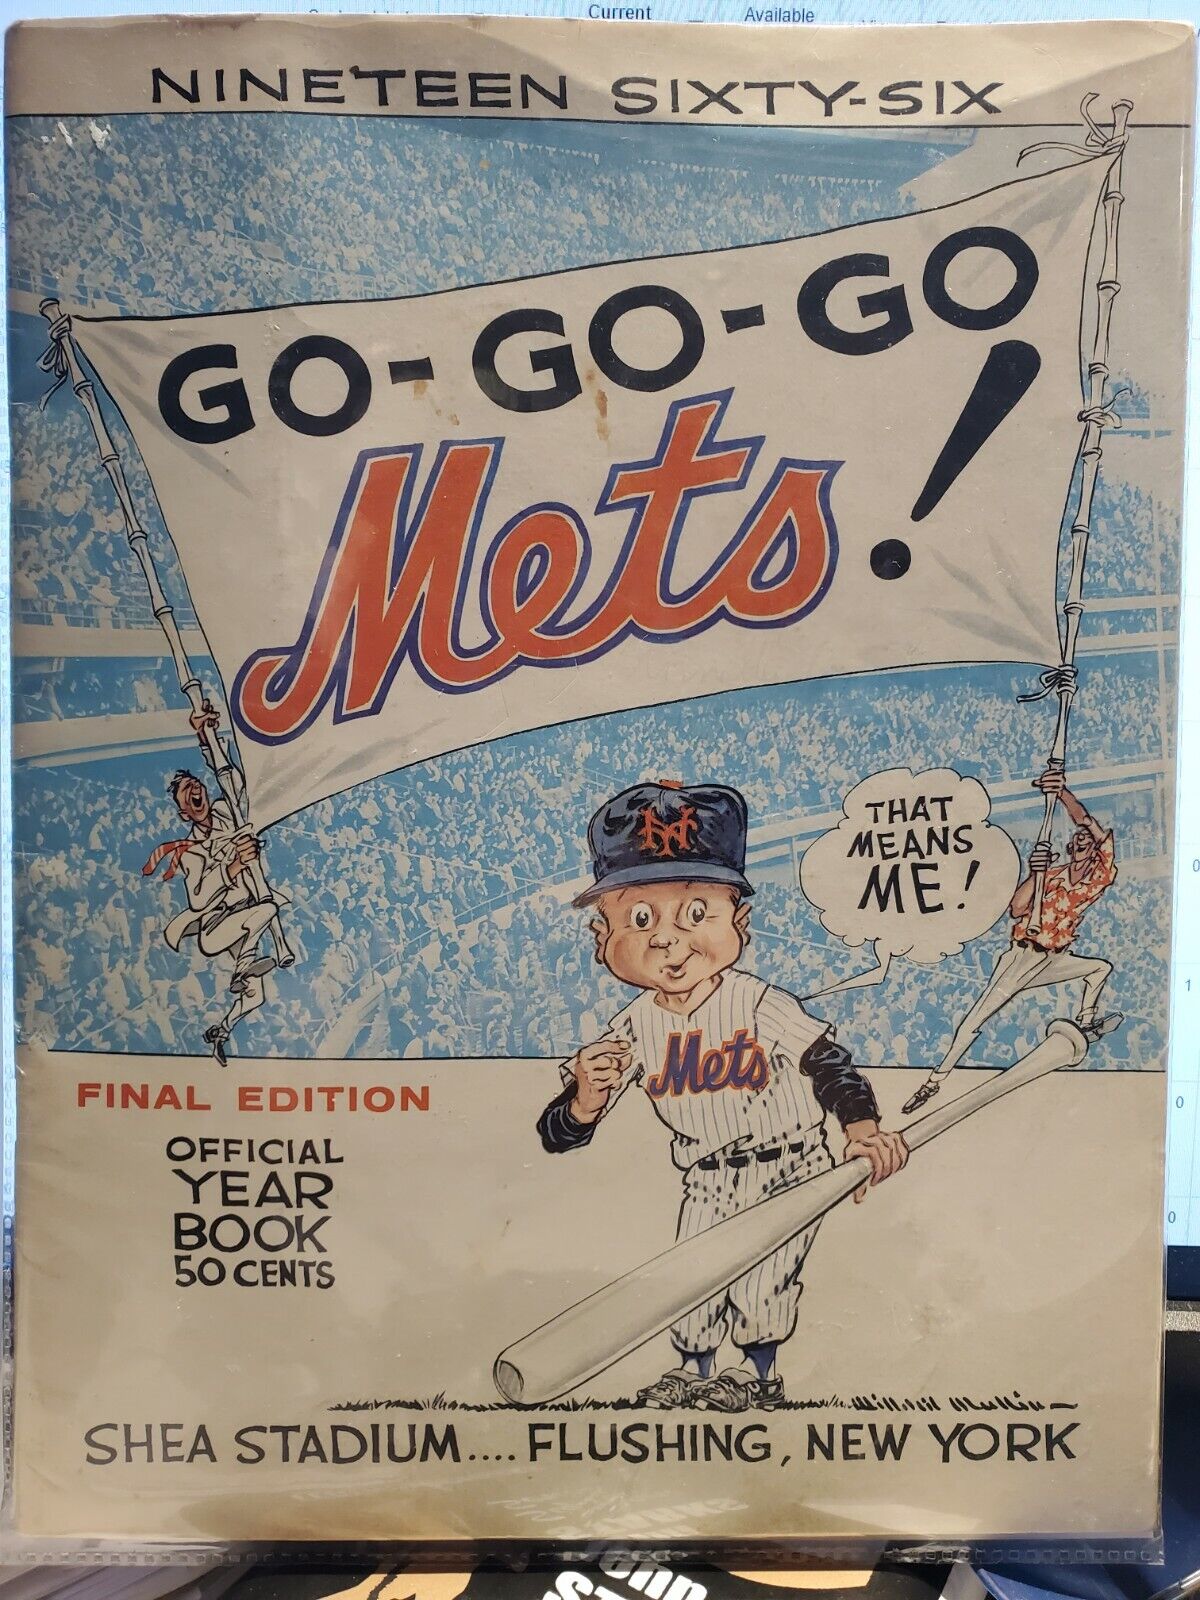 1966 New York Mets Original Year Book. 